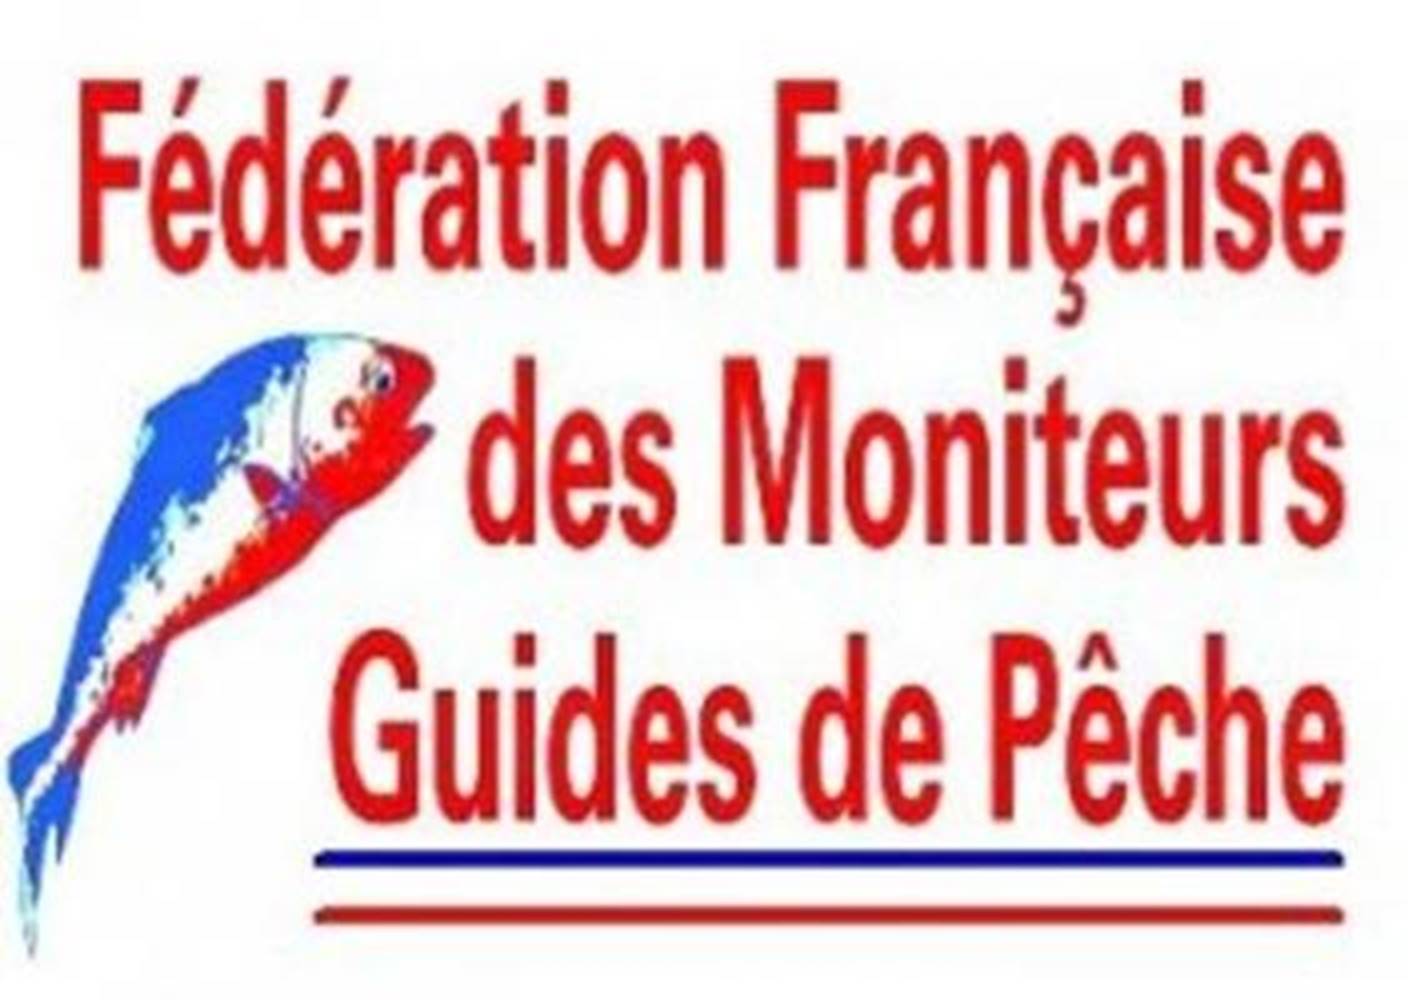 Logo-Fédération-Française-des-Moniteurs-Guides-de-Pêche-Sarzeau-Presqu'île-de-Rhuys-Golfe-du-Morbihan-Bretagne sud © FFMGP